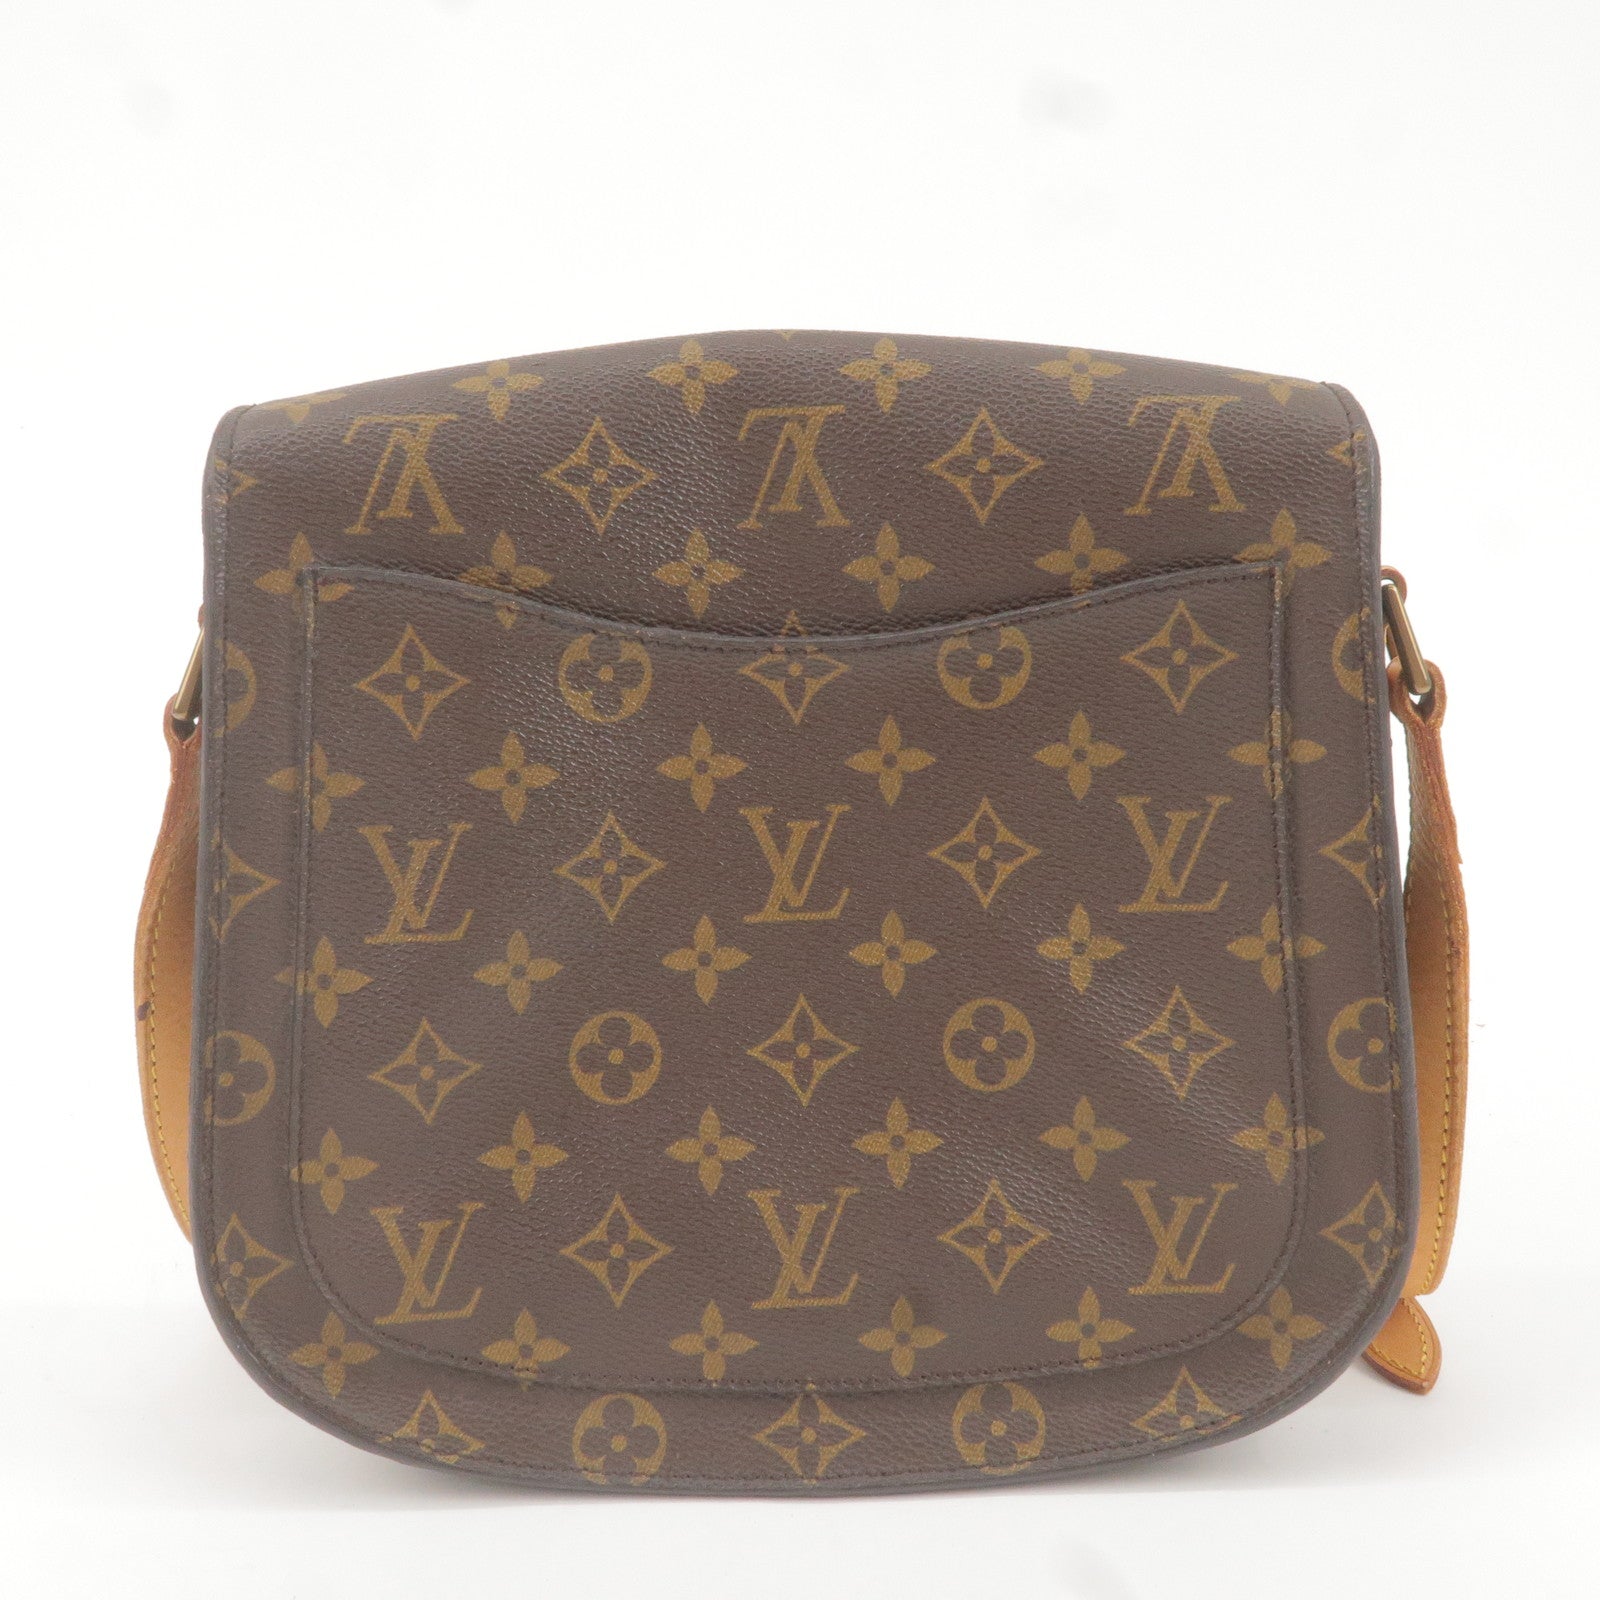 Shop for Louis Vuitton Blue Epi Leather St Cloud GM Crossbody Bag